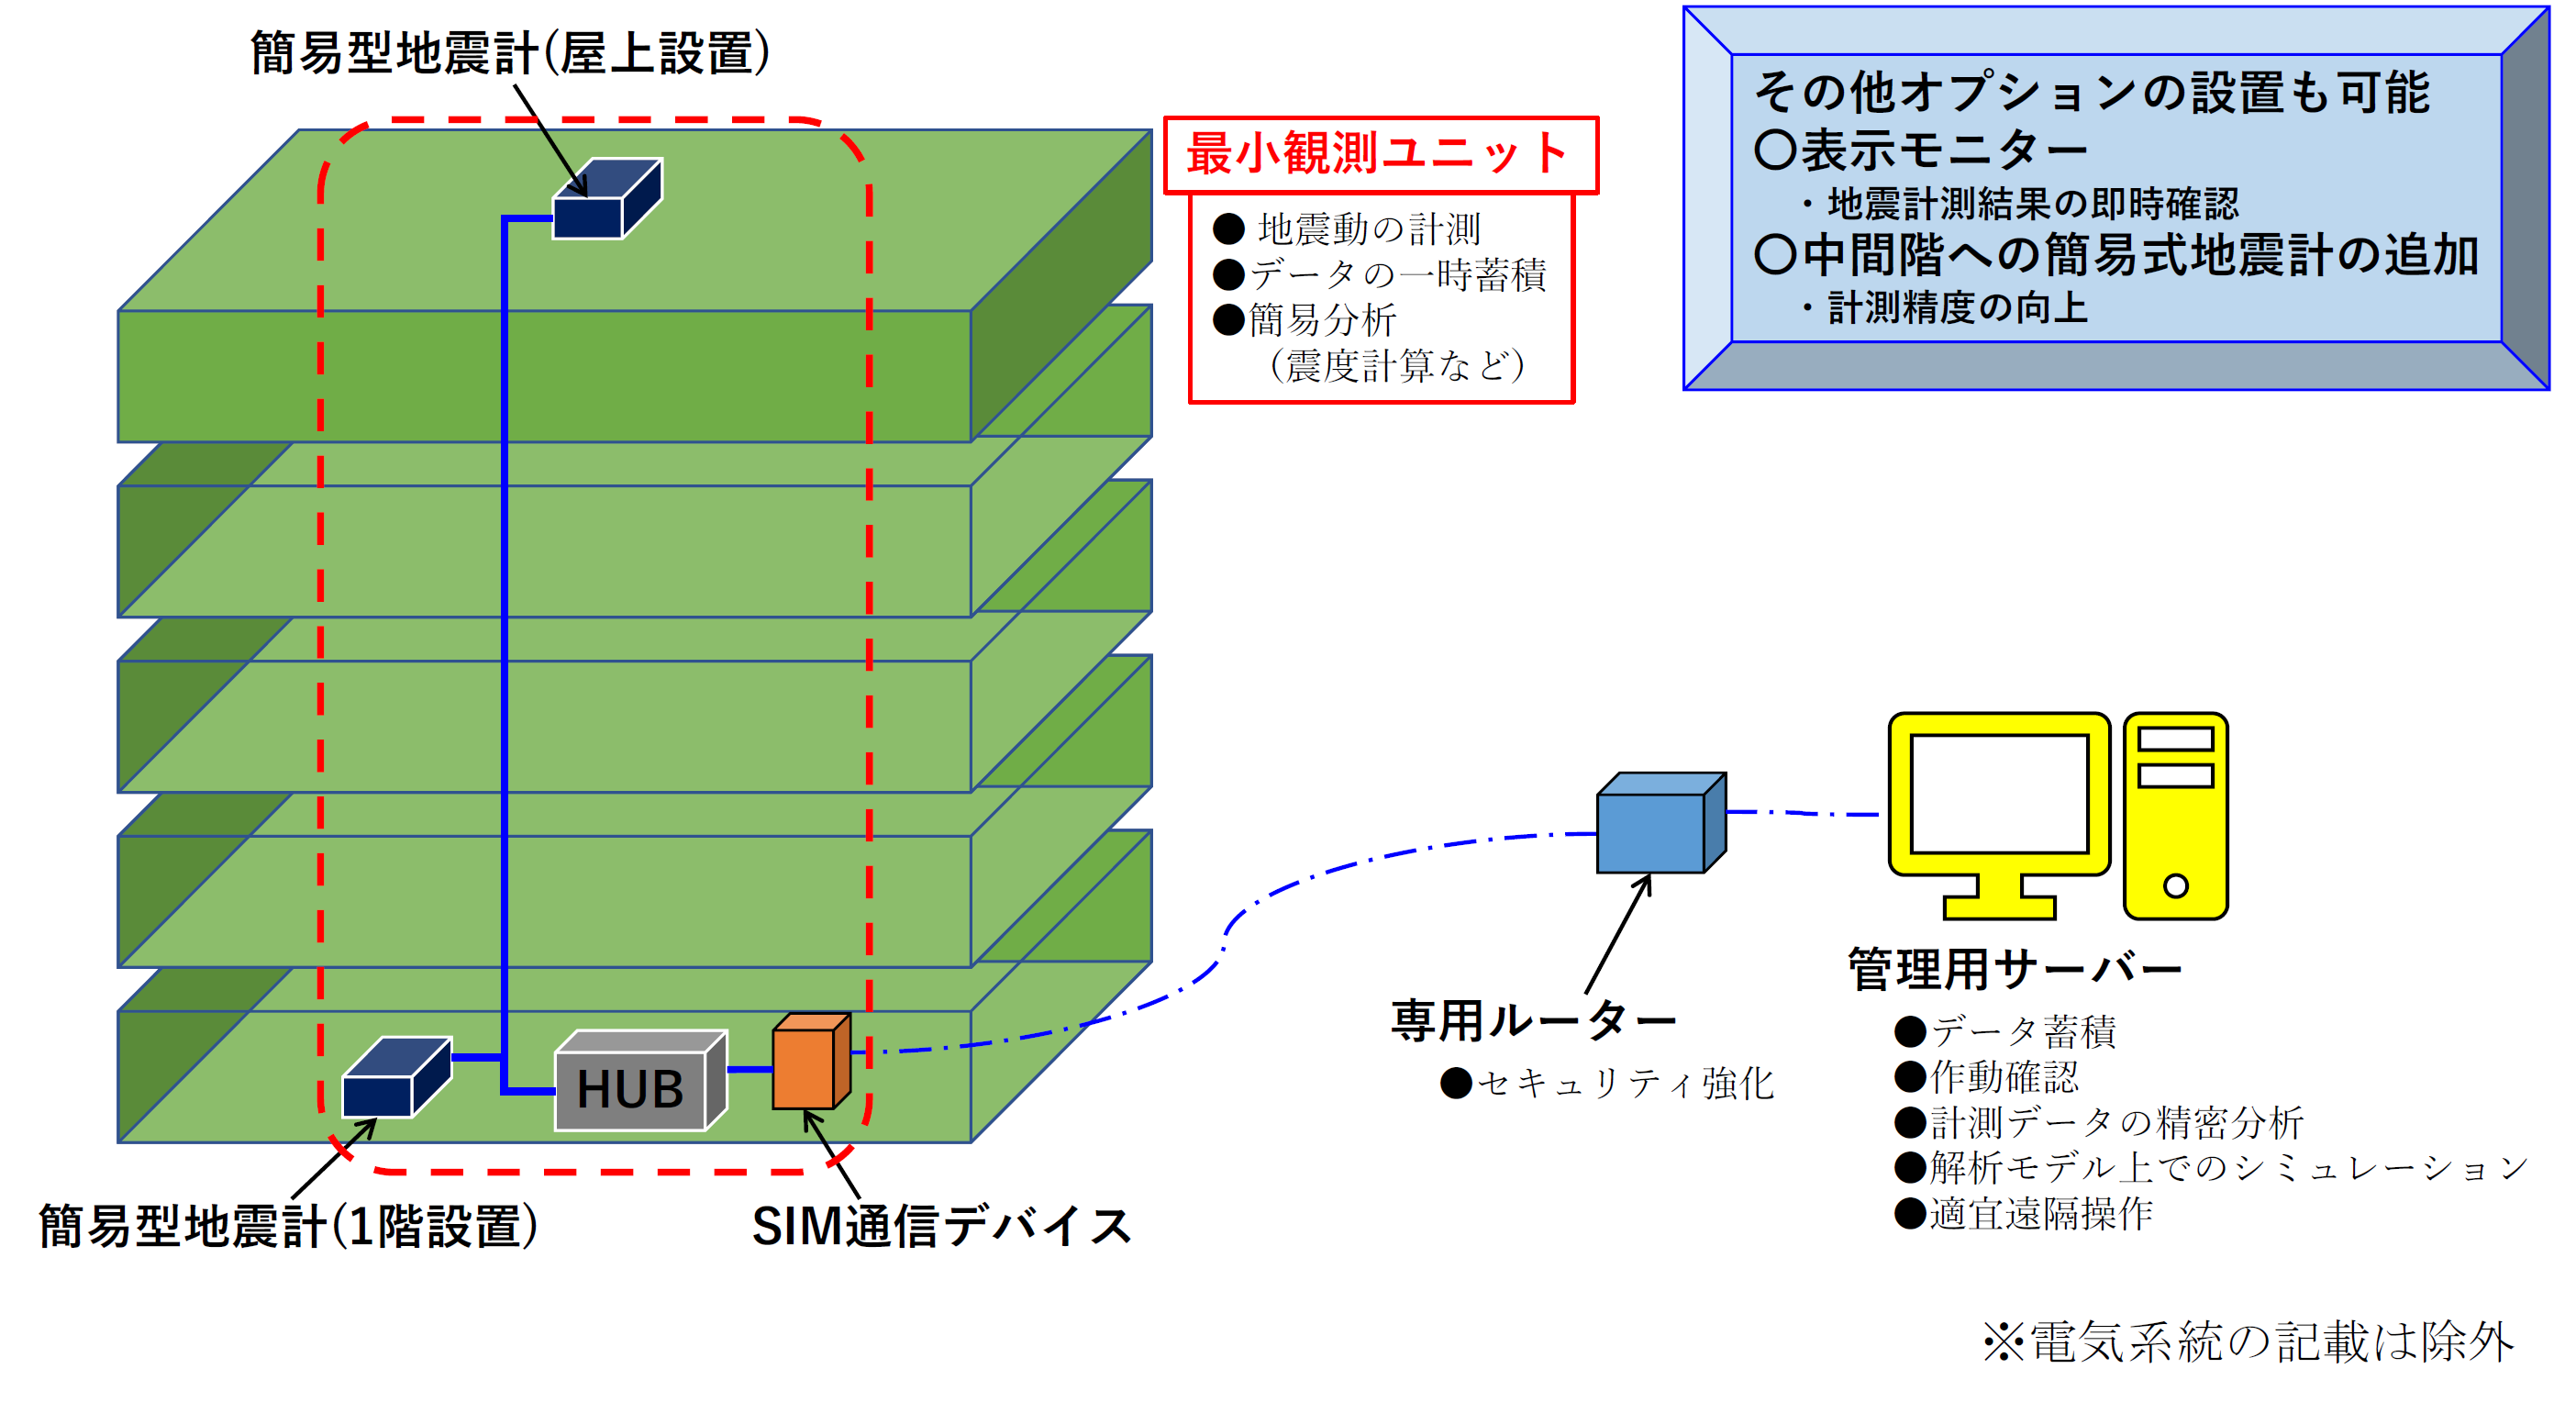 図-３ 簡易型地震計測システム構成図